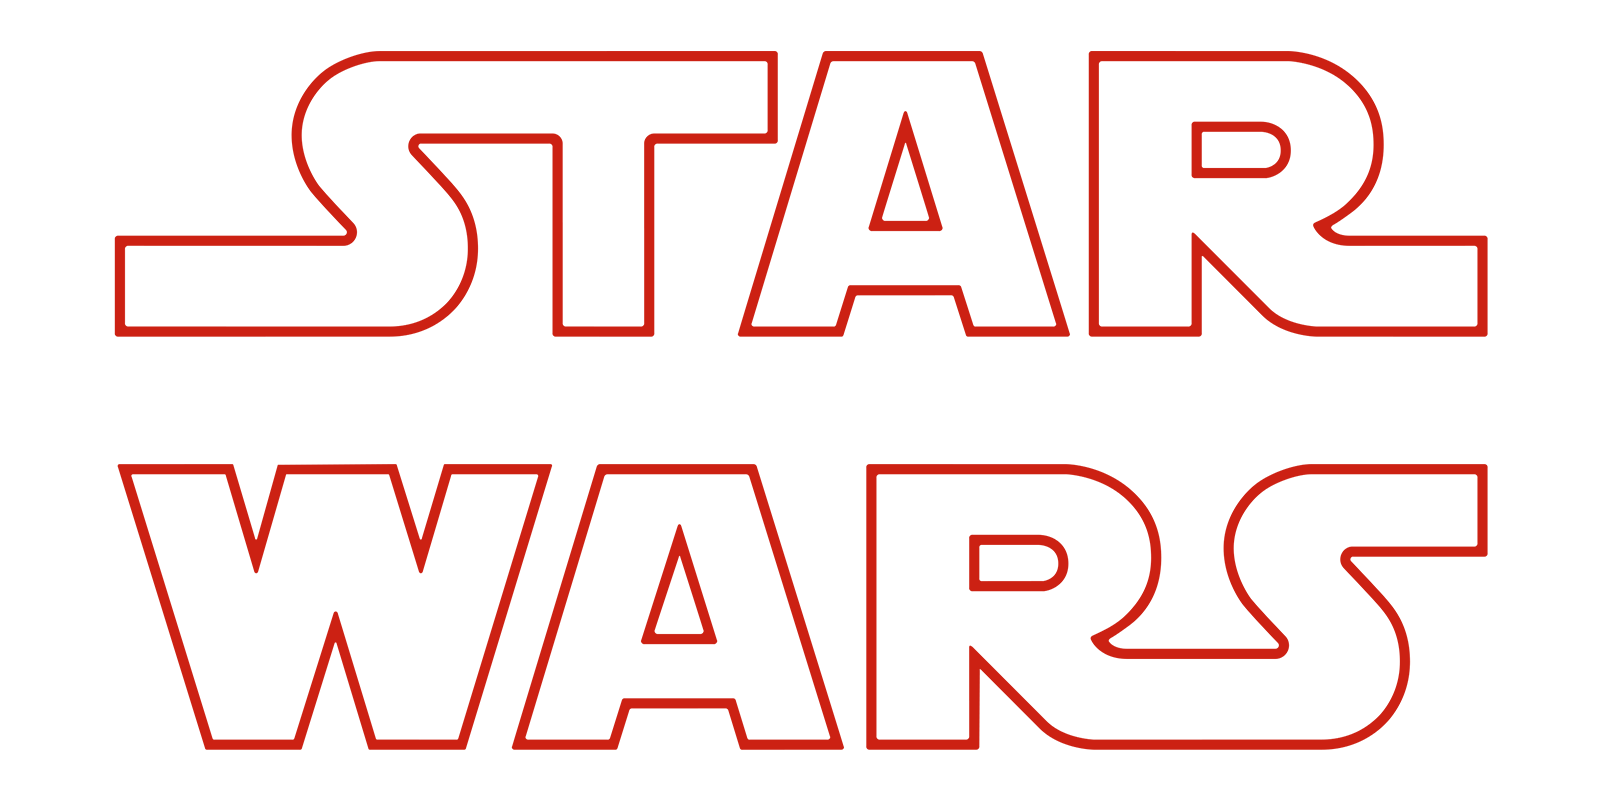 star wars the last jedi full movie free